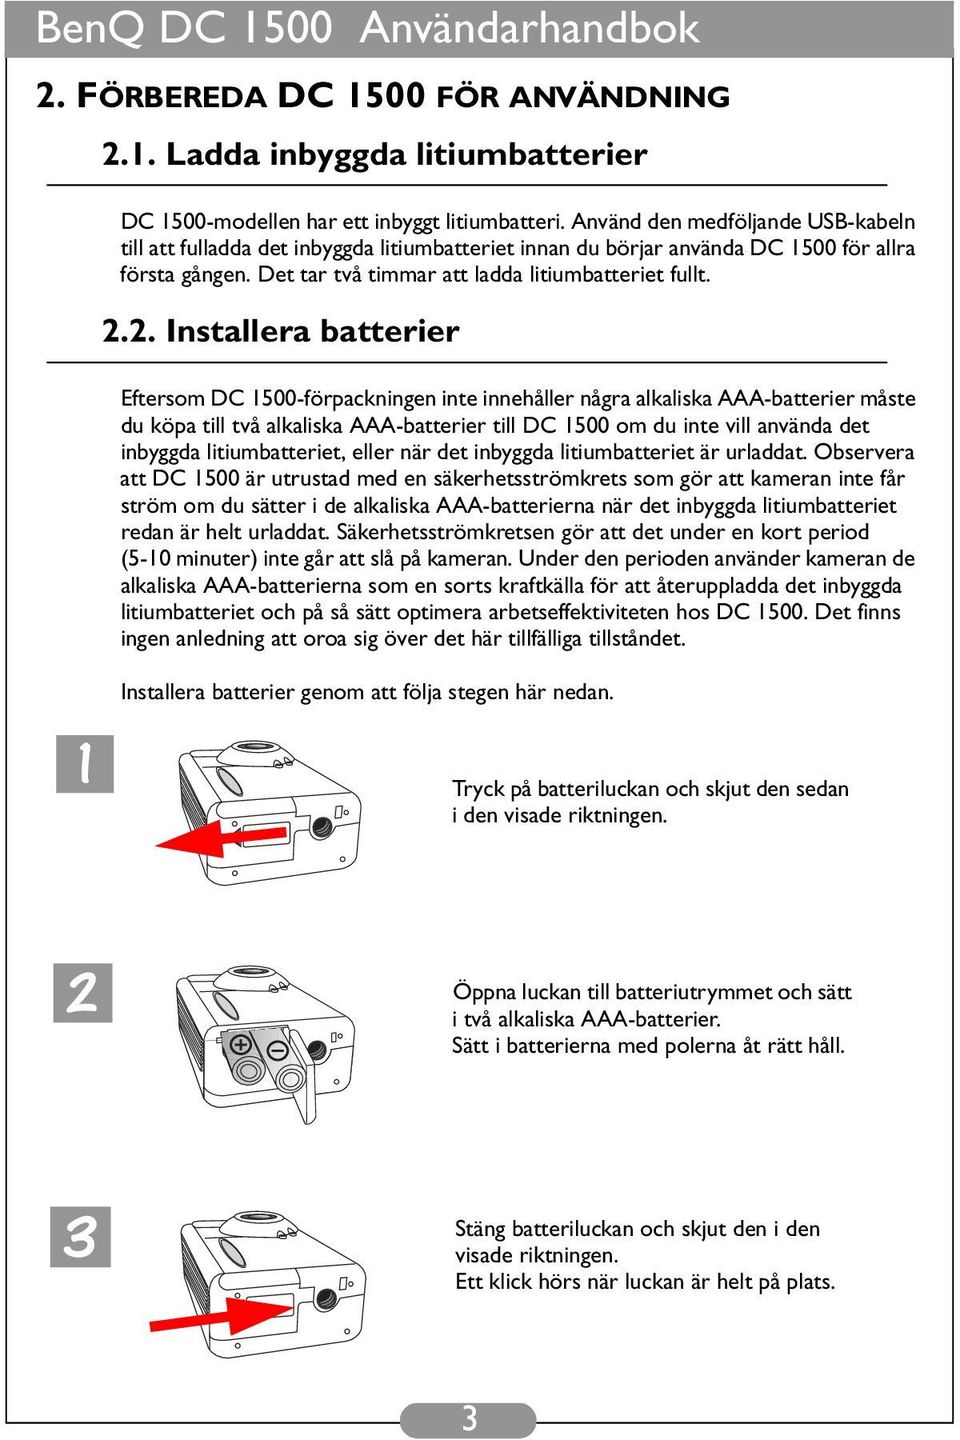 2. Installera batterier Eftersom DC 1500-förpackningen inte innehåller några alkaliska AAA-batterier måste du köpa till två alkaliska AAA-batterier till DC 1500 om du inte vill använda det inbyggda